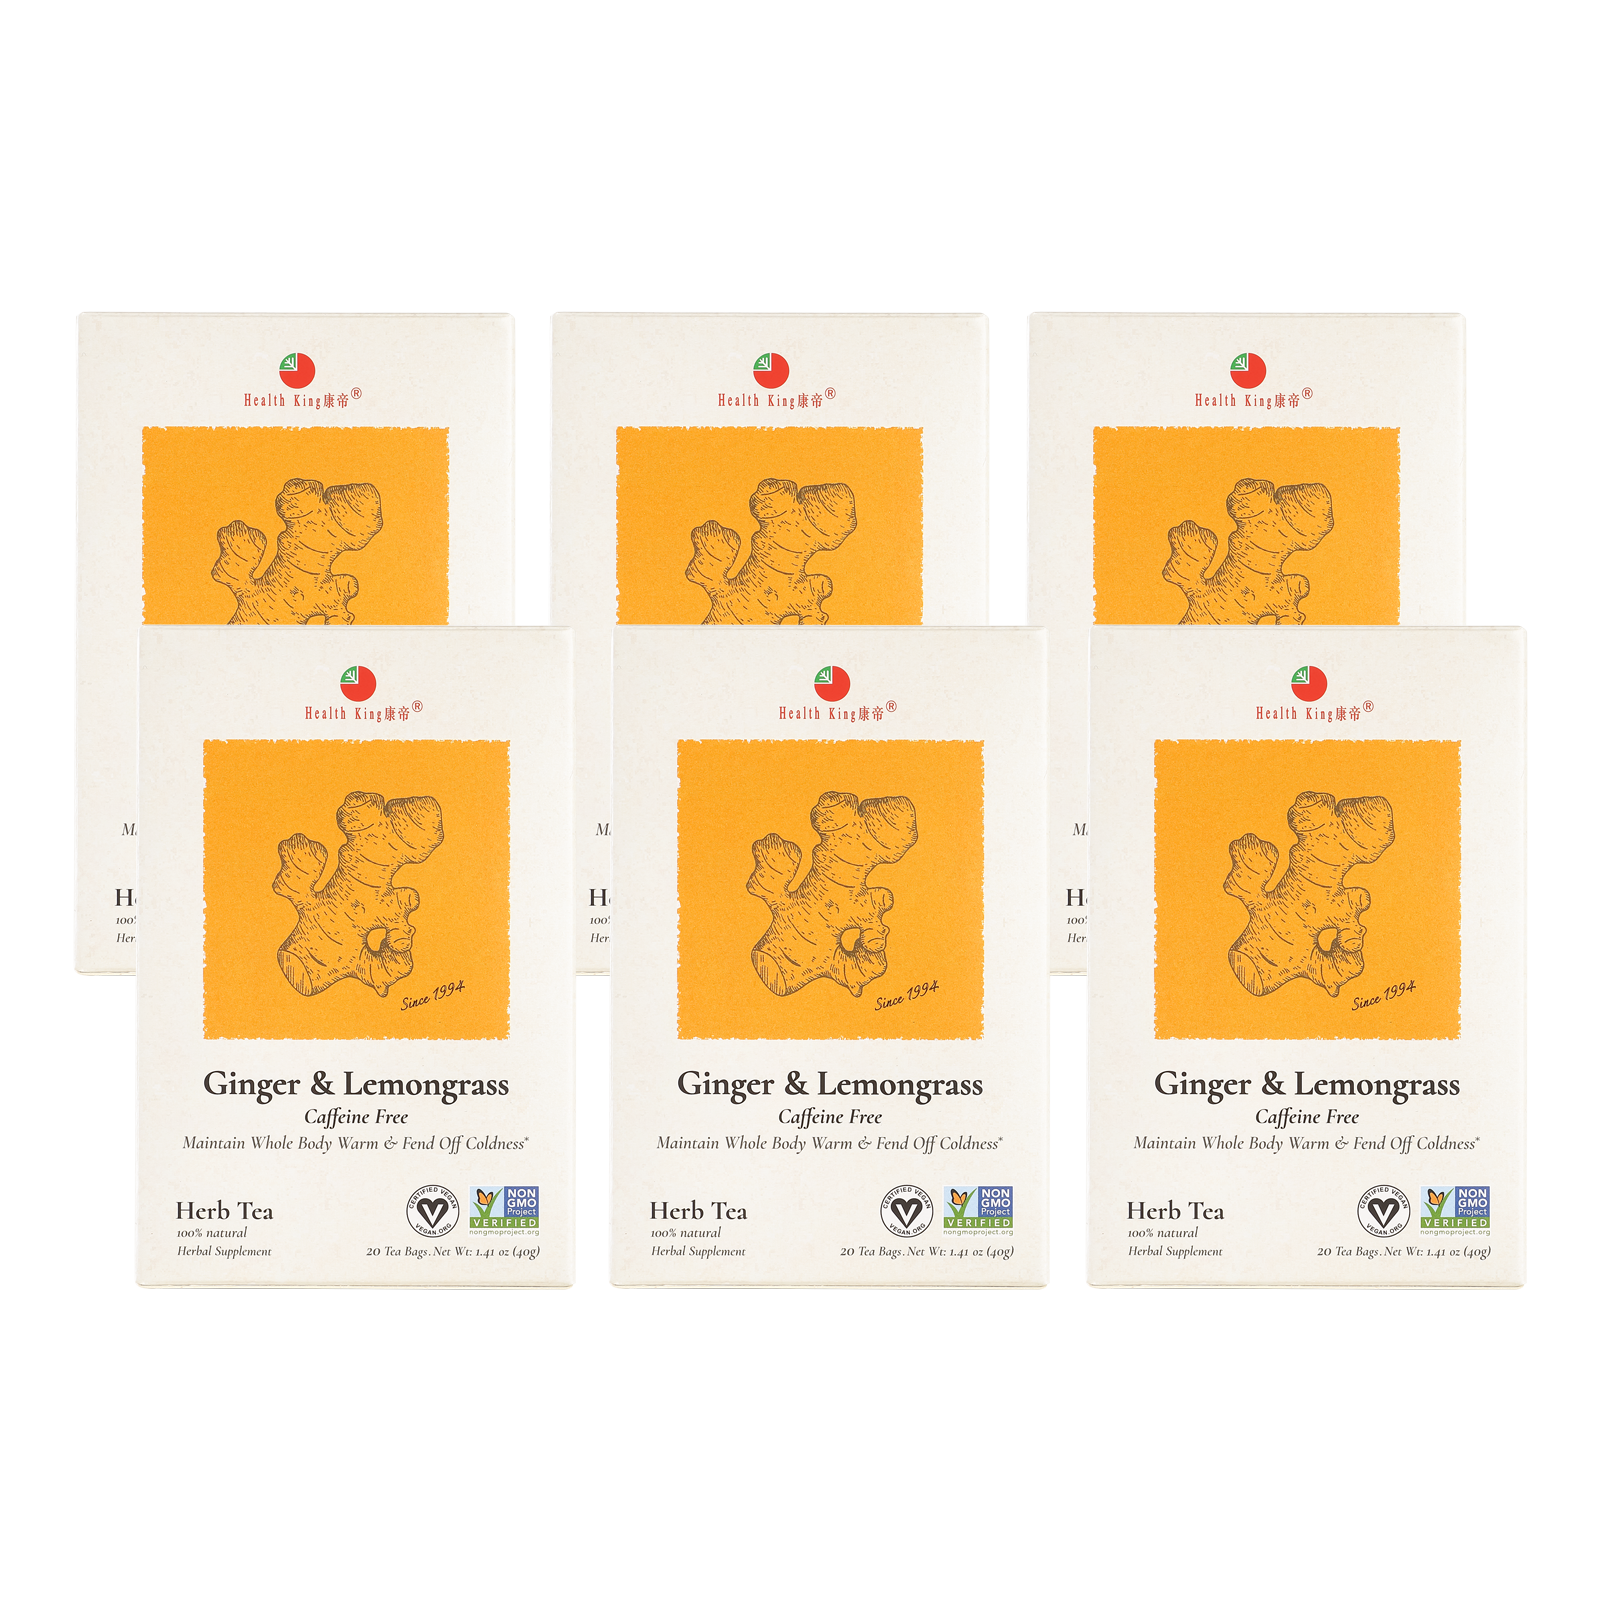 Six boxes of Ginger Lemongrass Tea packaging